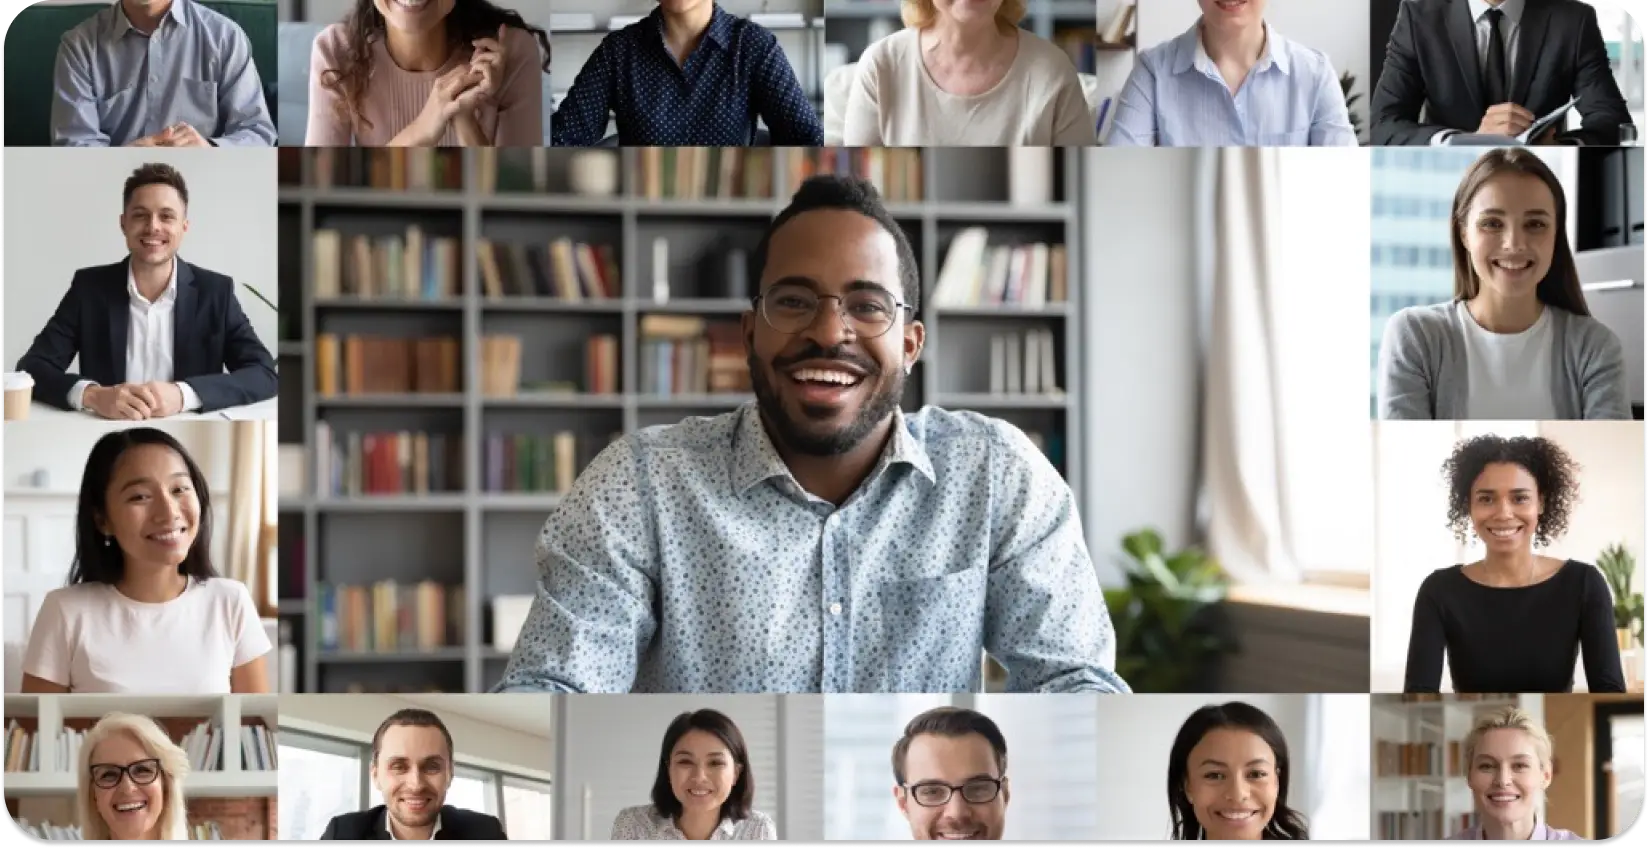 Kolaž različitih profesionalaca na virtualnom sastanku, pokazujući inkluzivnost na radnom mjestu.